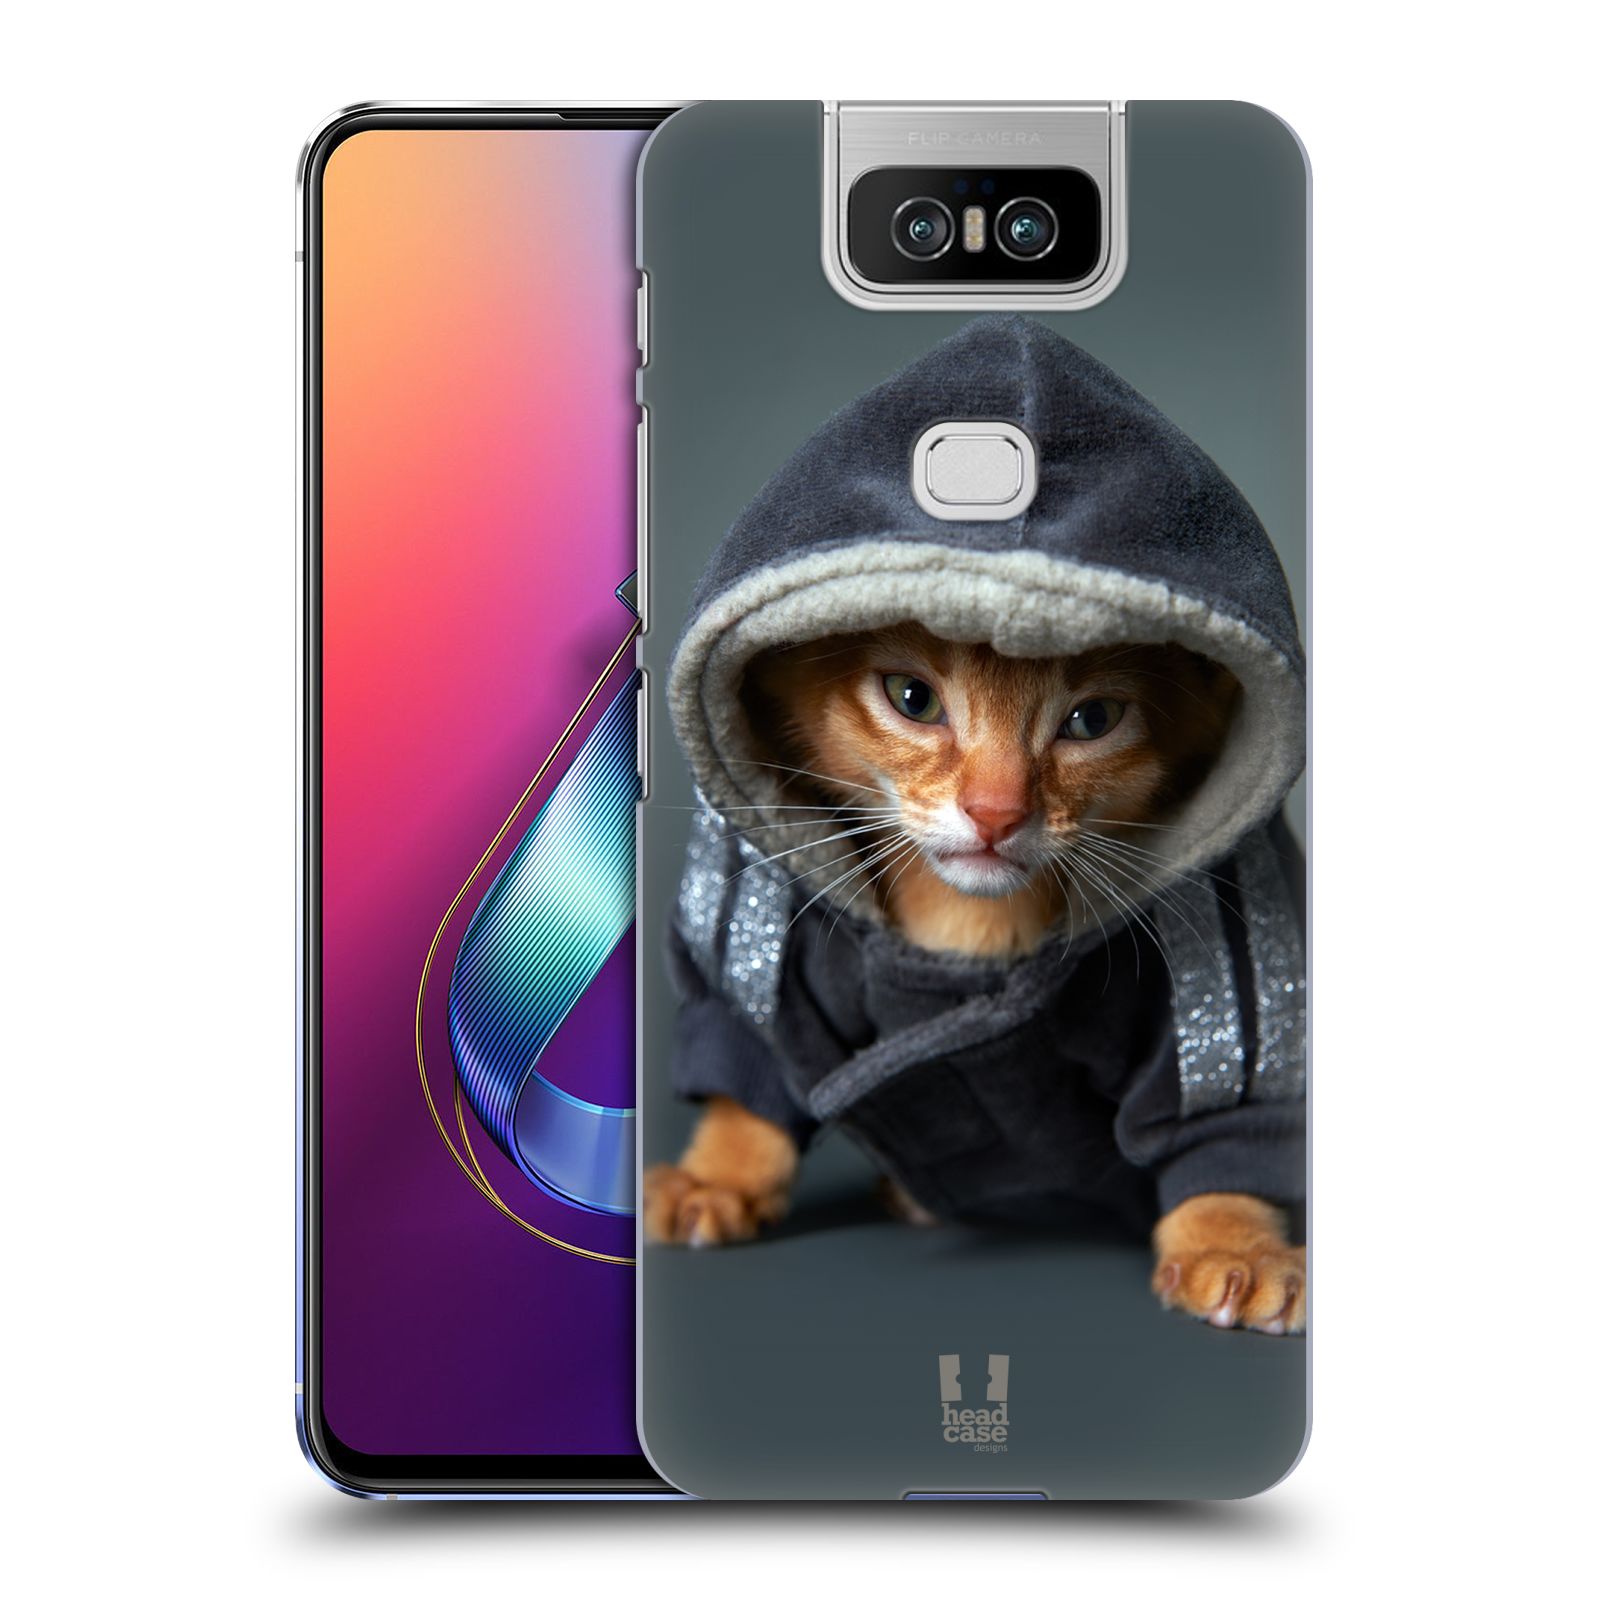 Pouzdro na mobil Asus Zenfone 6 ZS630KL - HEAD CASE - vzor Legrační zvířátka kotě/kočička s kapucí